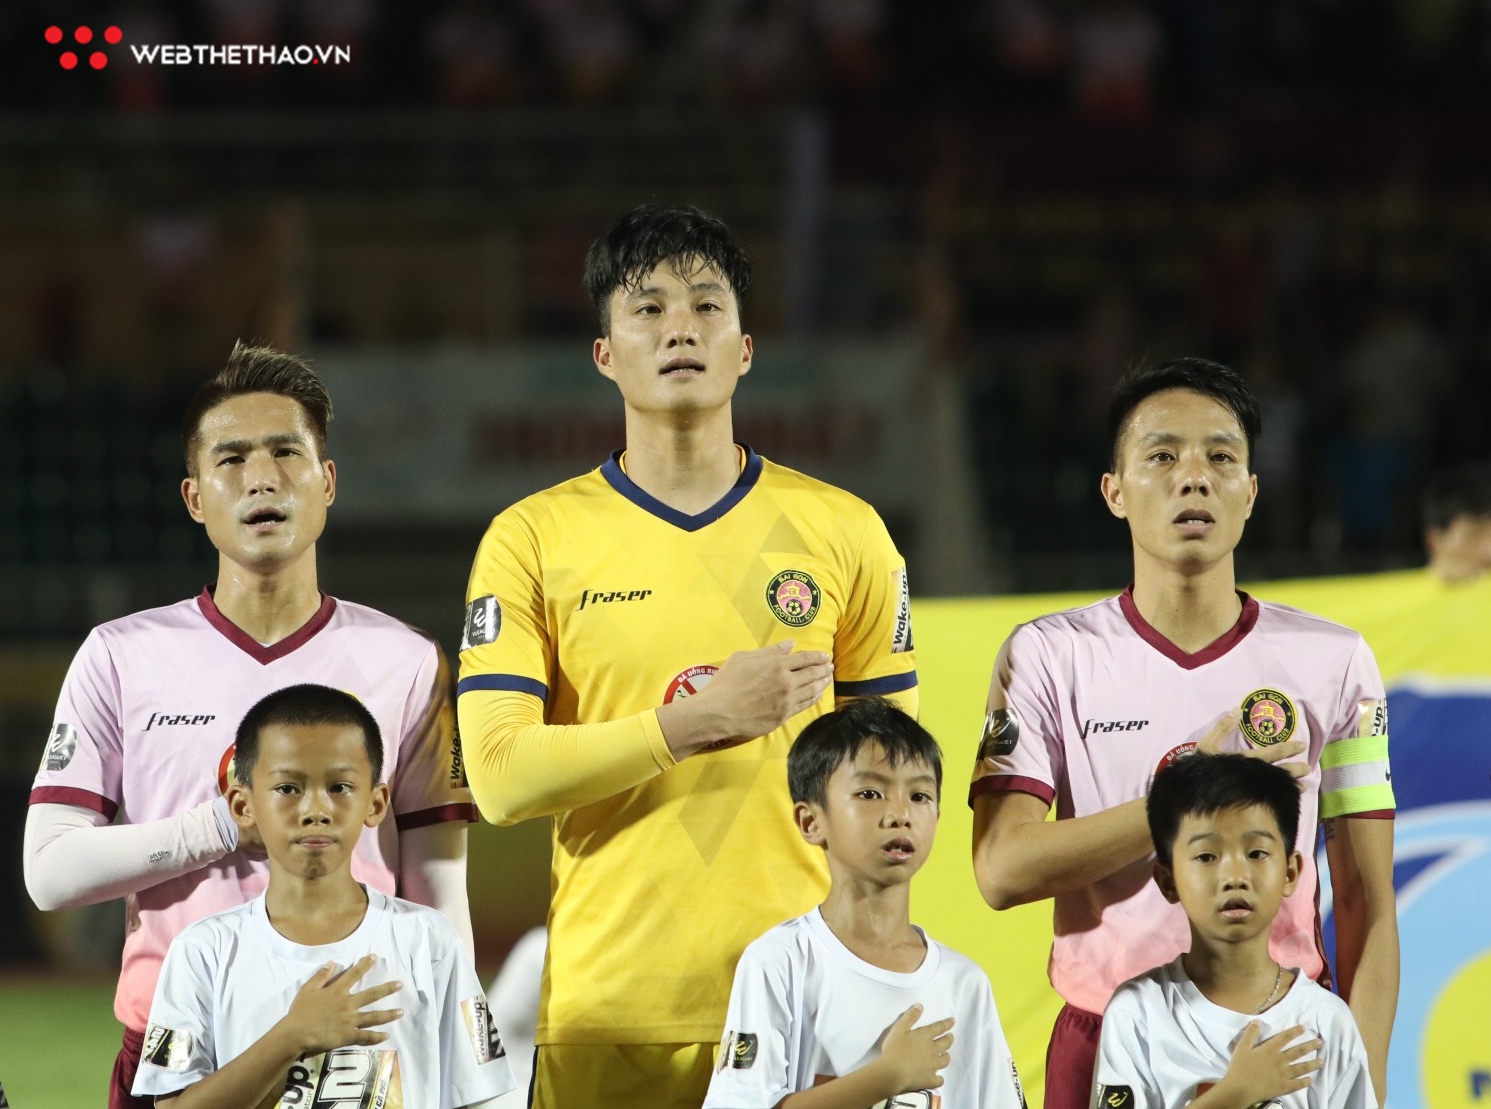 Viettel thua thảm Sài Gòn FC trong ngày Ngọc Hải mang băng thủ quân